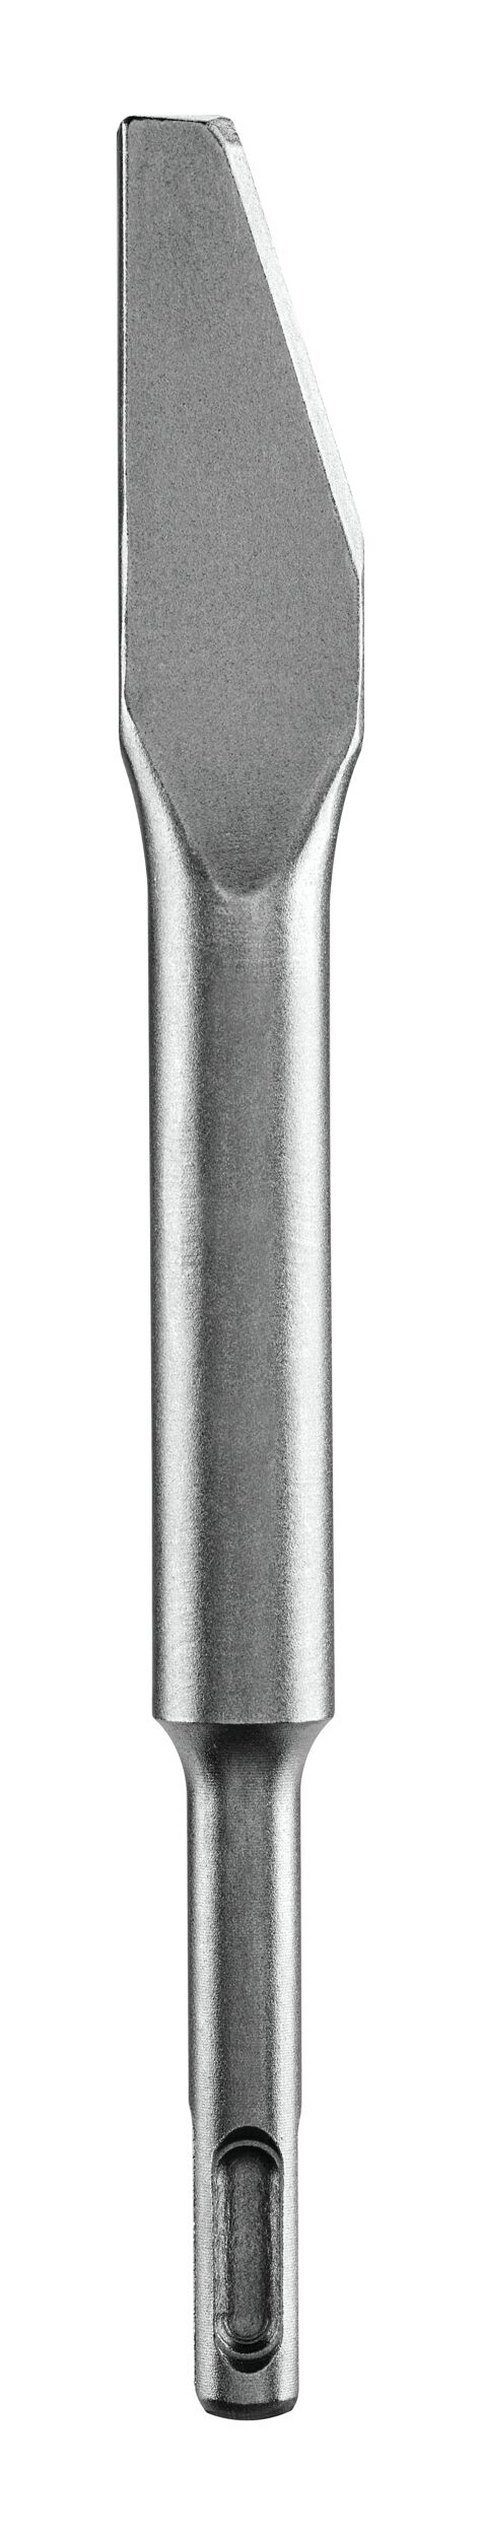 BOSCH Universalbohrer, Mörtelmeißel mit SDS plus-Aufnahme - 200 x 6,5 mm